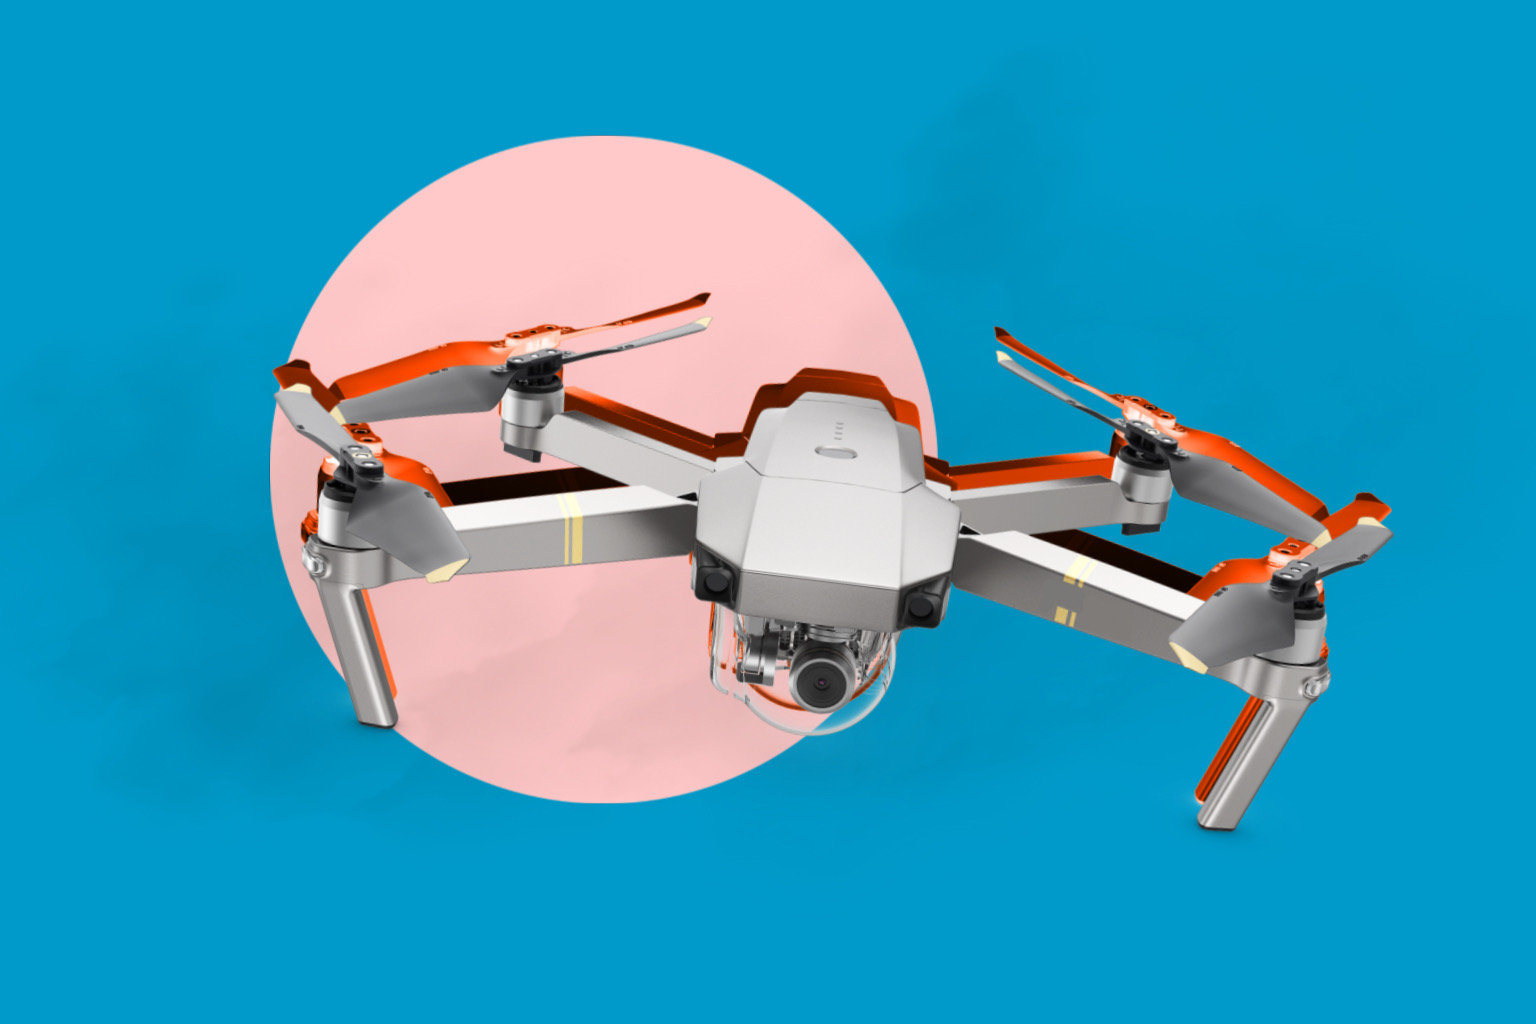 Diputados aprueban tipificar uso de drones para cometer ilícitos